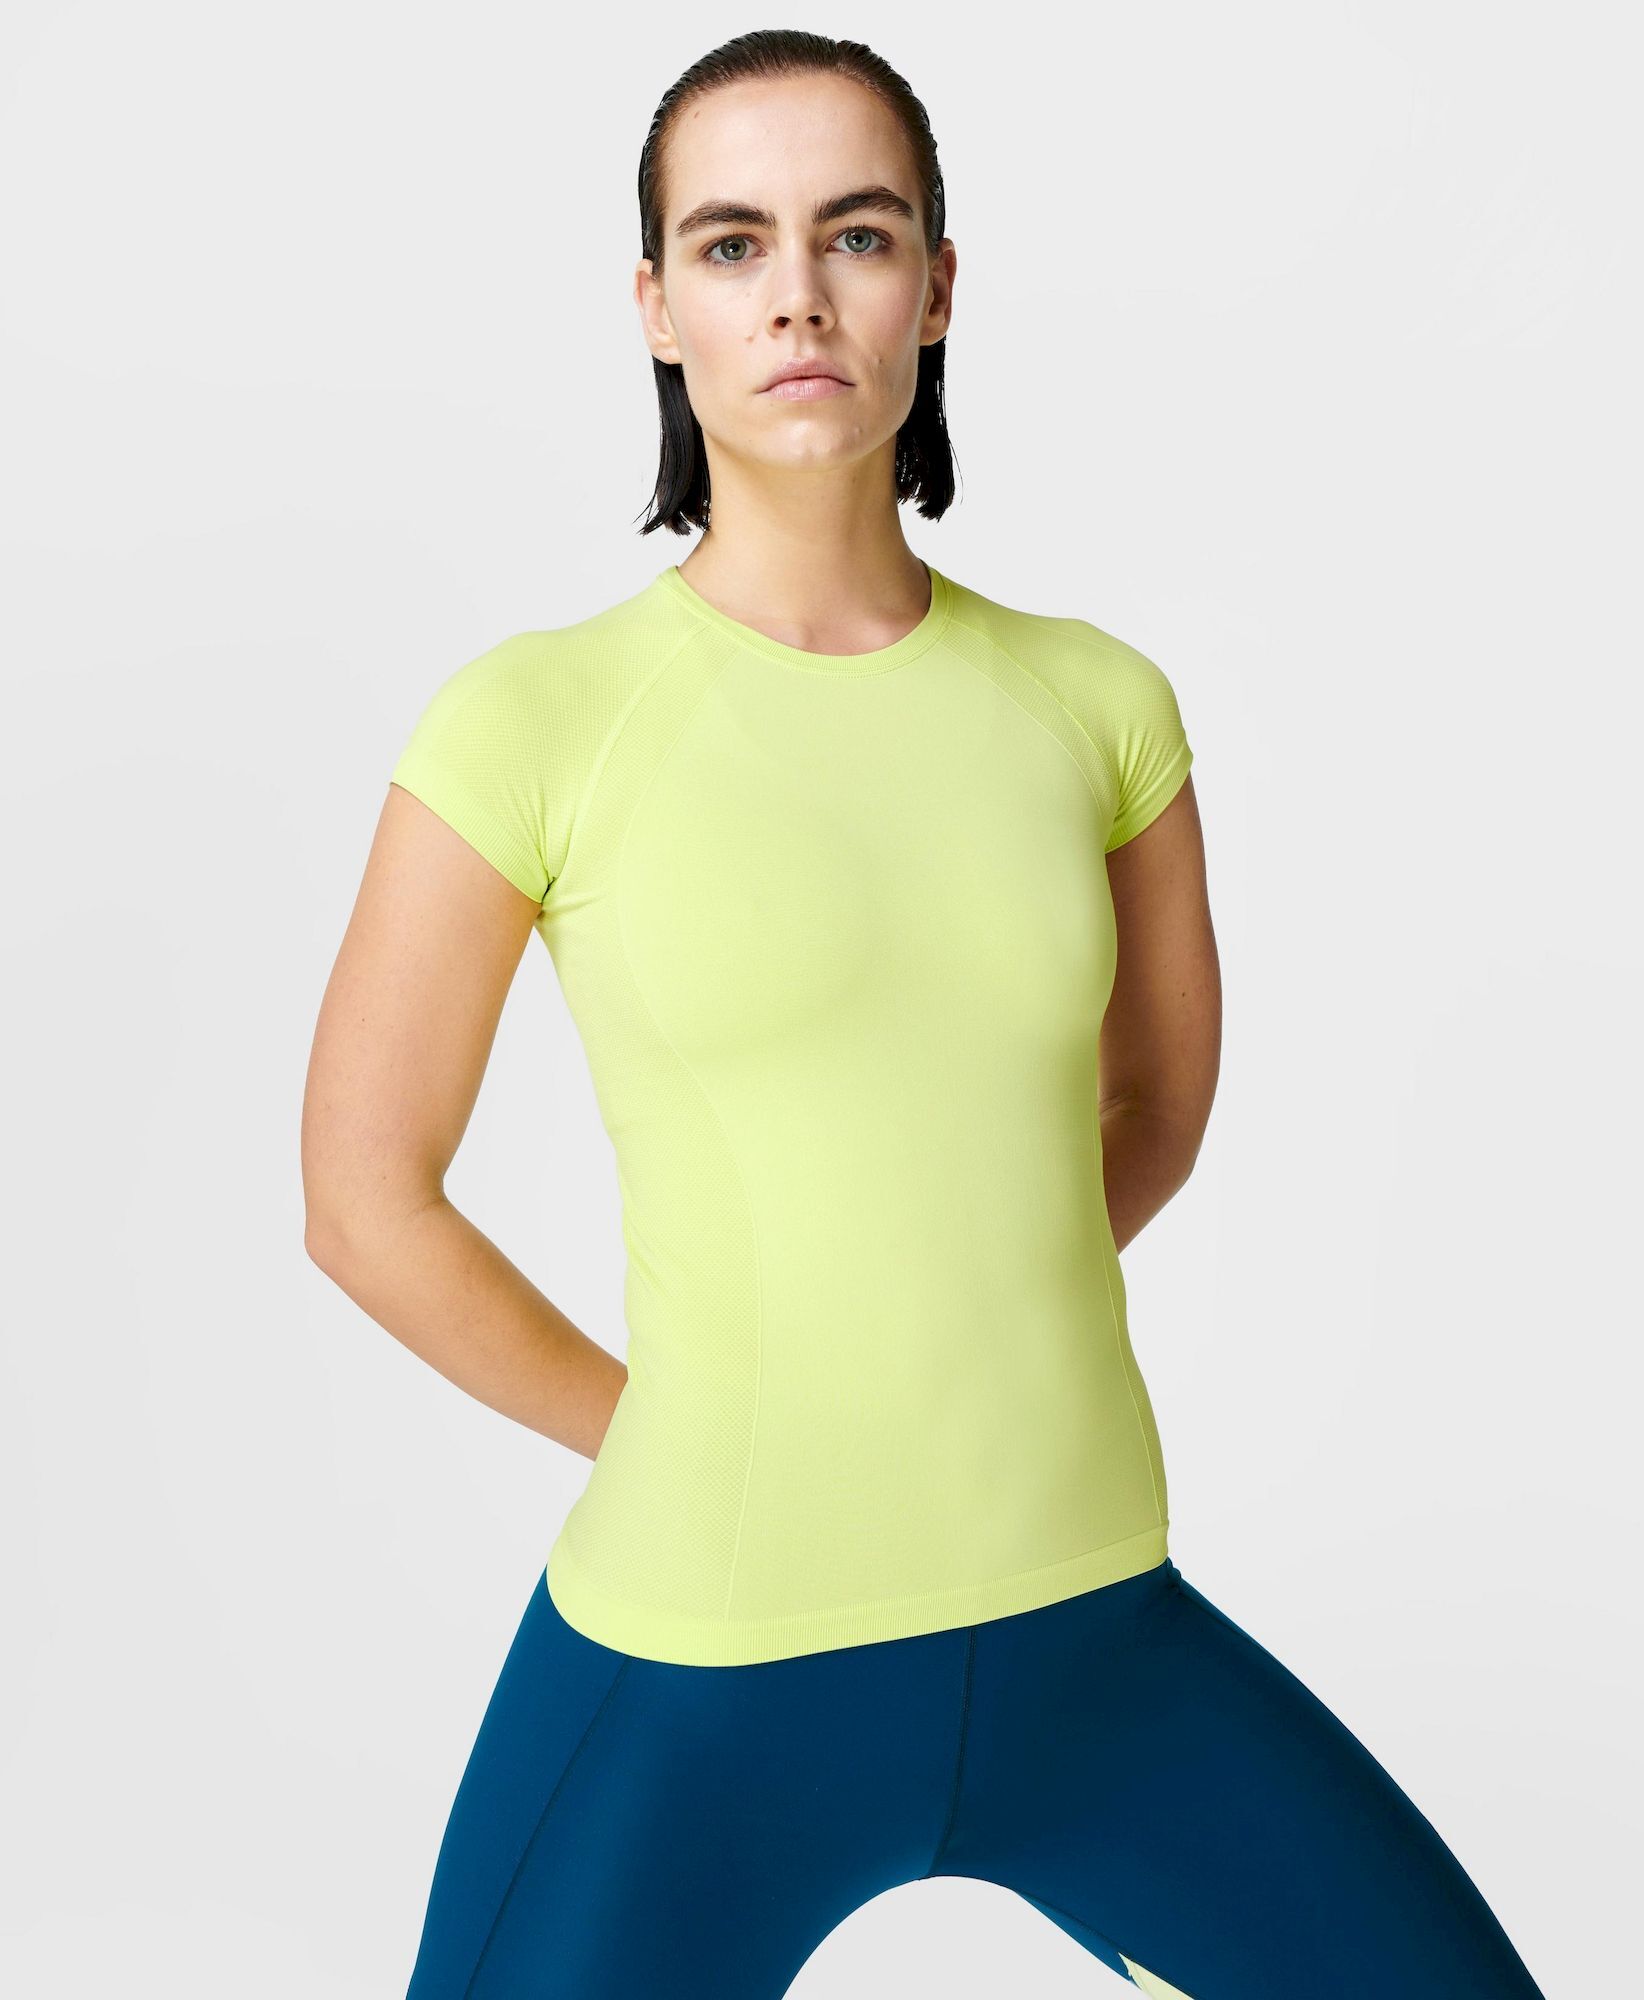 Sweaty Betty Athlete Seamless Workout T-shirt - T-paita - Naiset